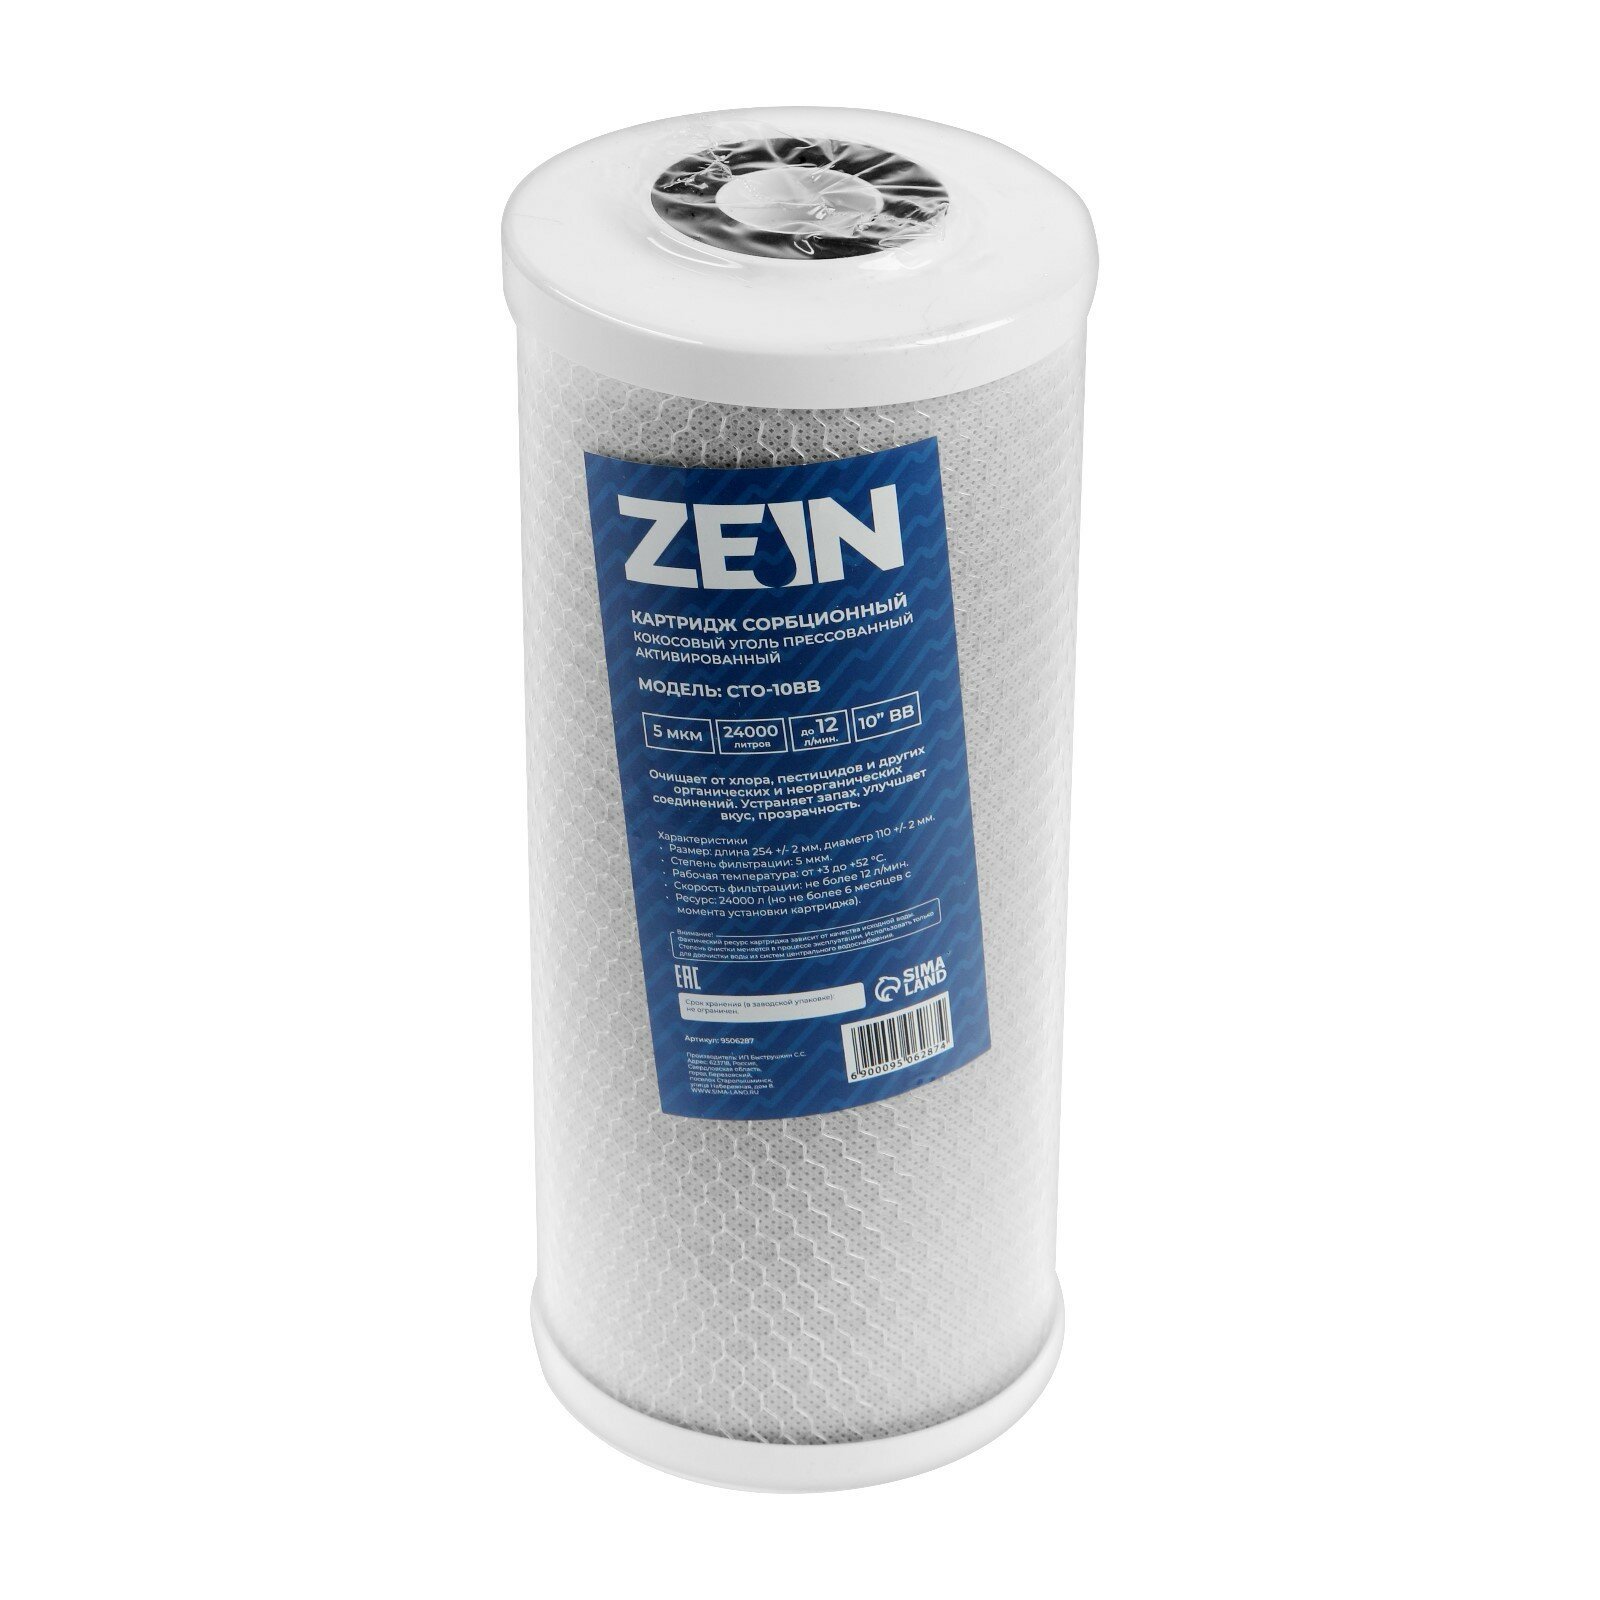 Картридж сменный ZEIN CTO-10BB, прессованный кокосовый уголь, 5 мкм (1шт.)